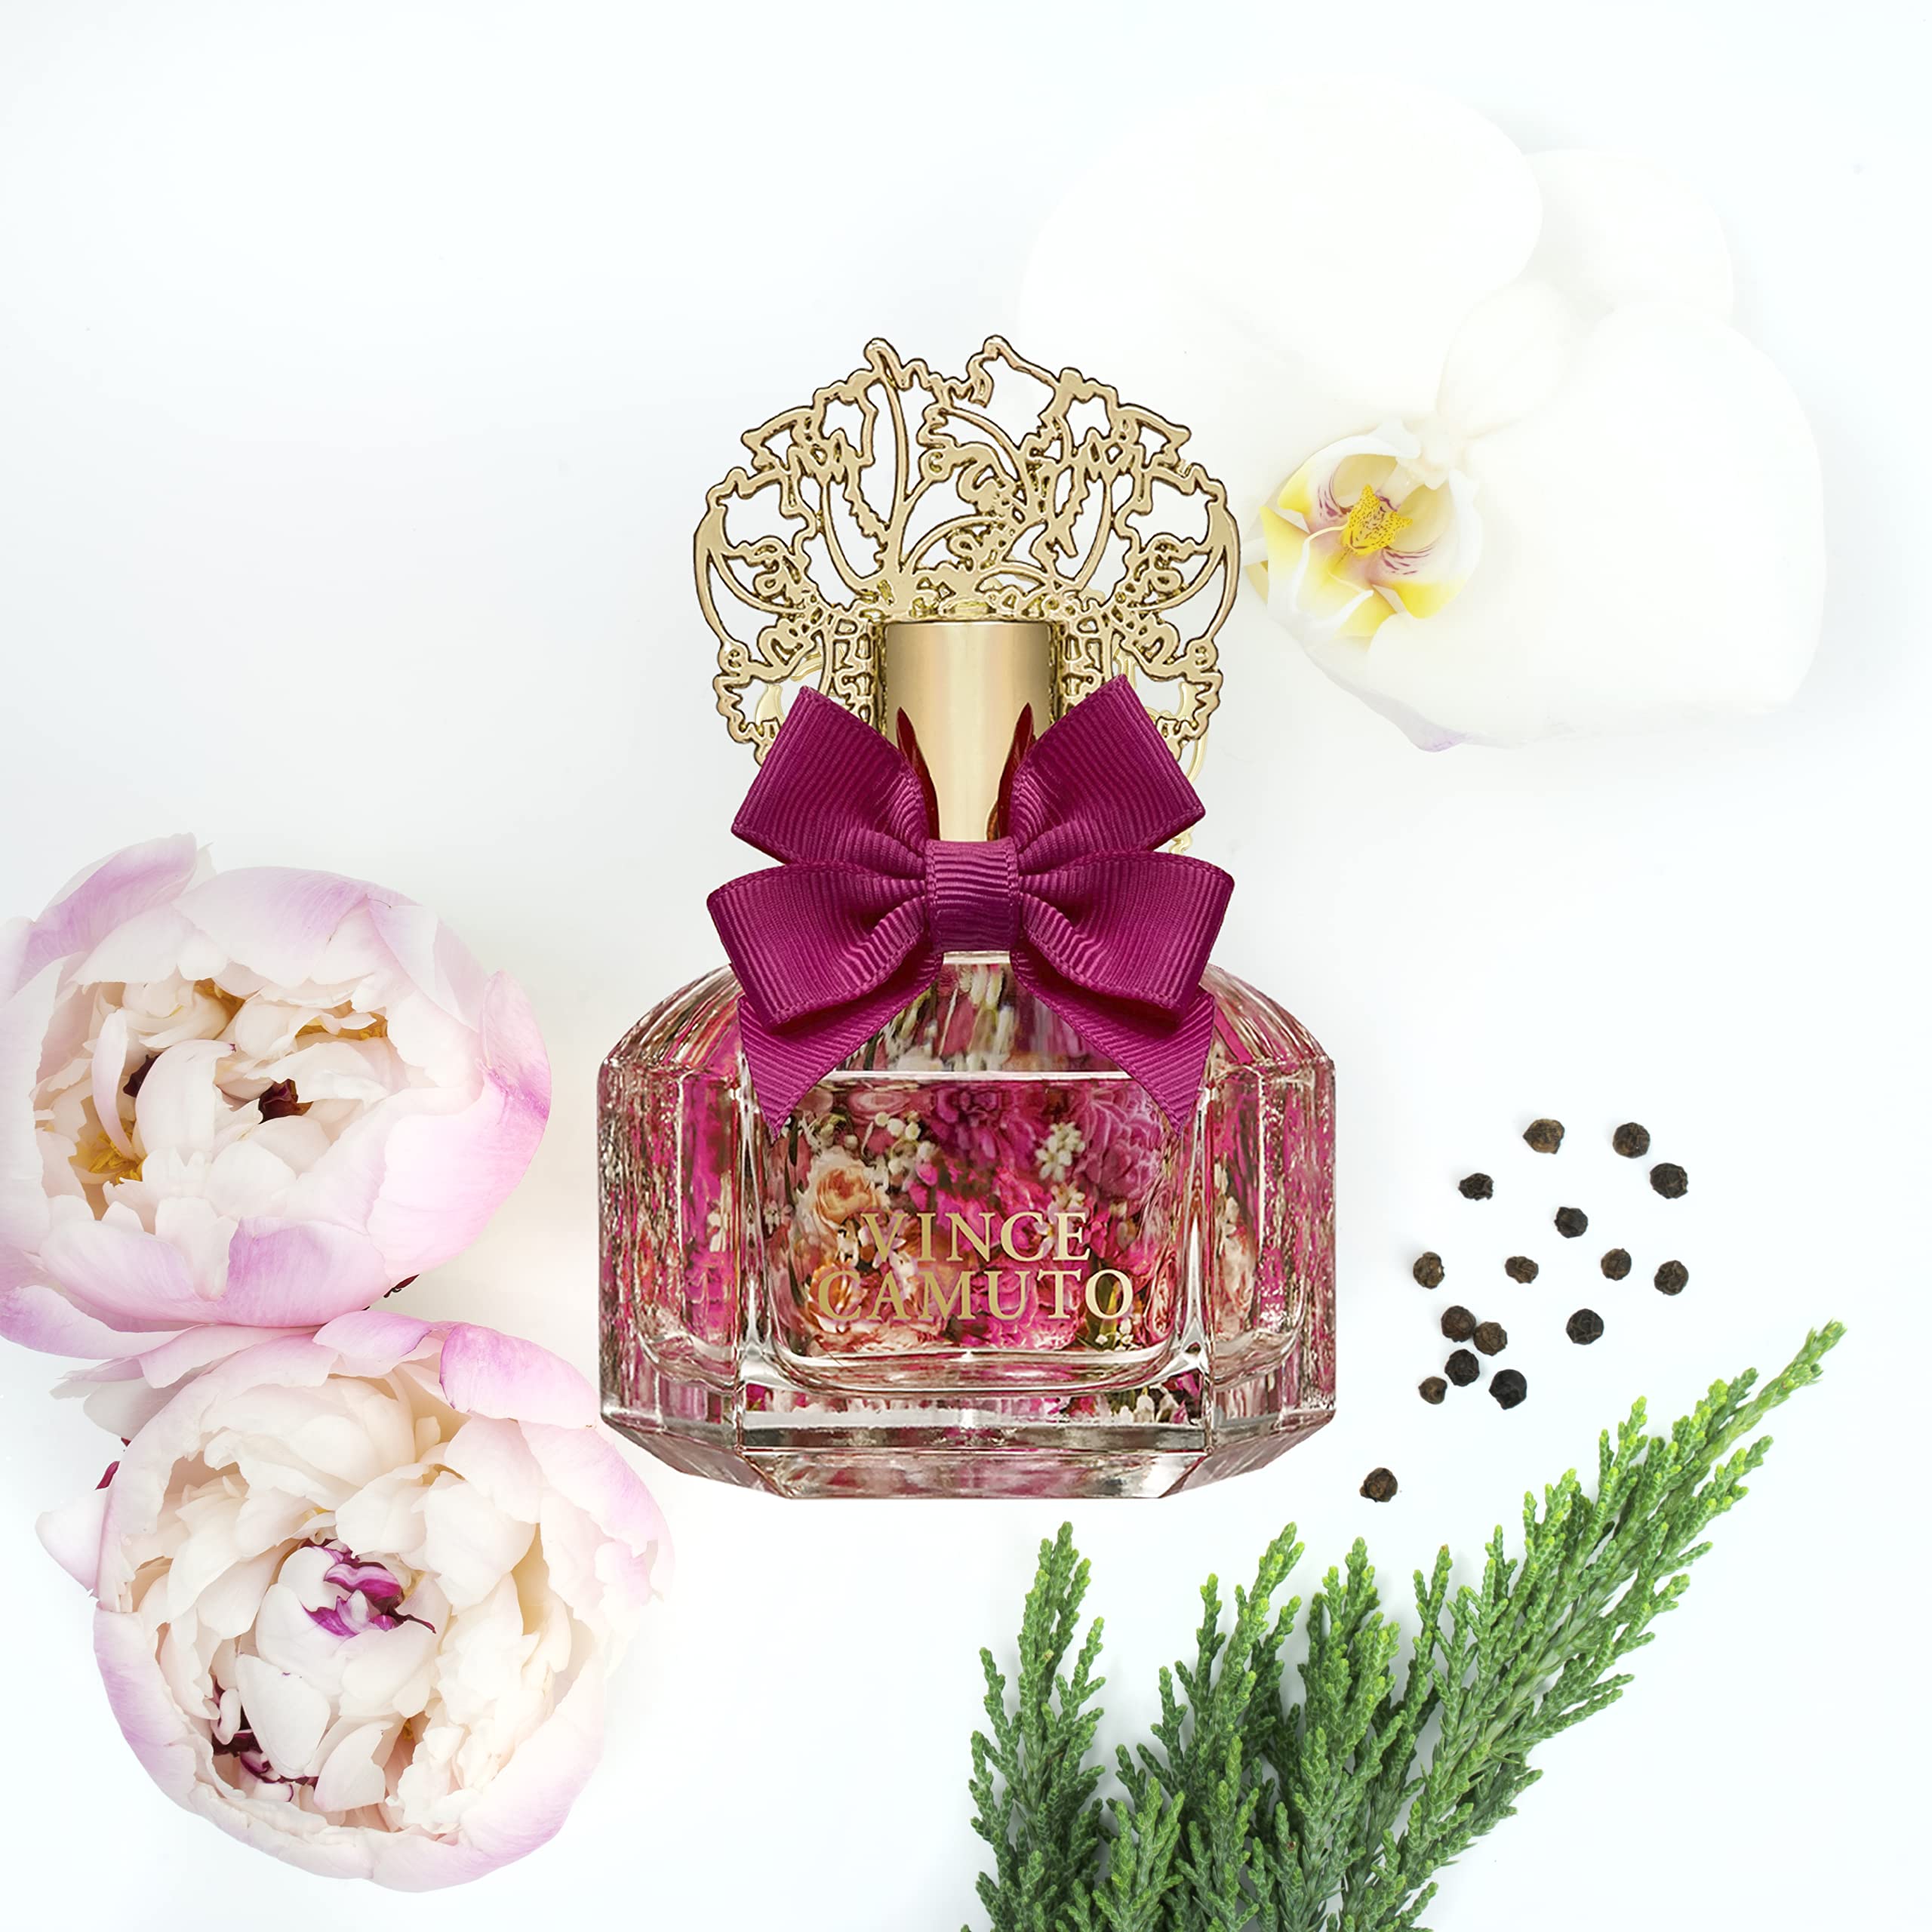 Vince Camuto Floreale Eau de Parfum Spray Perfume for Women- Bergamont, Orchid & Vanilla